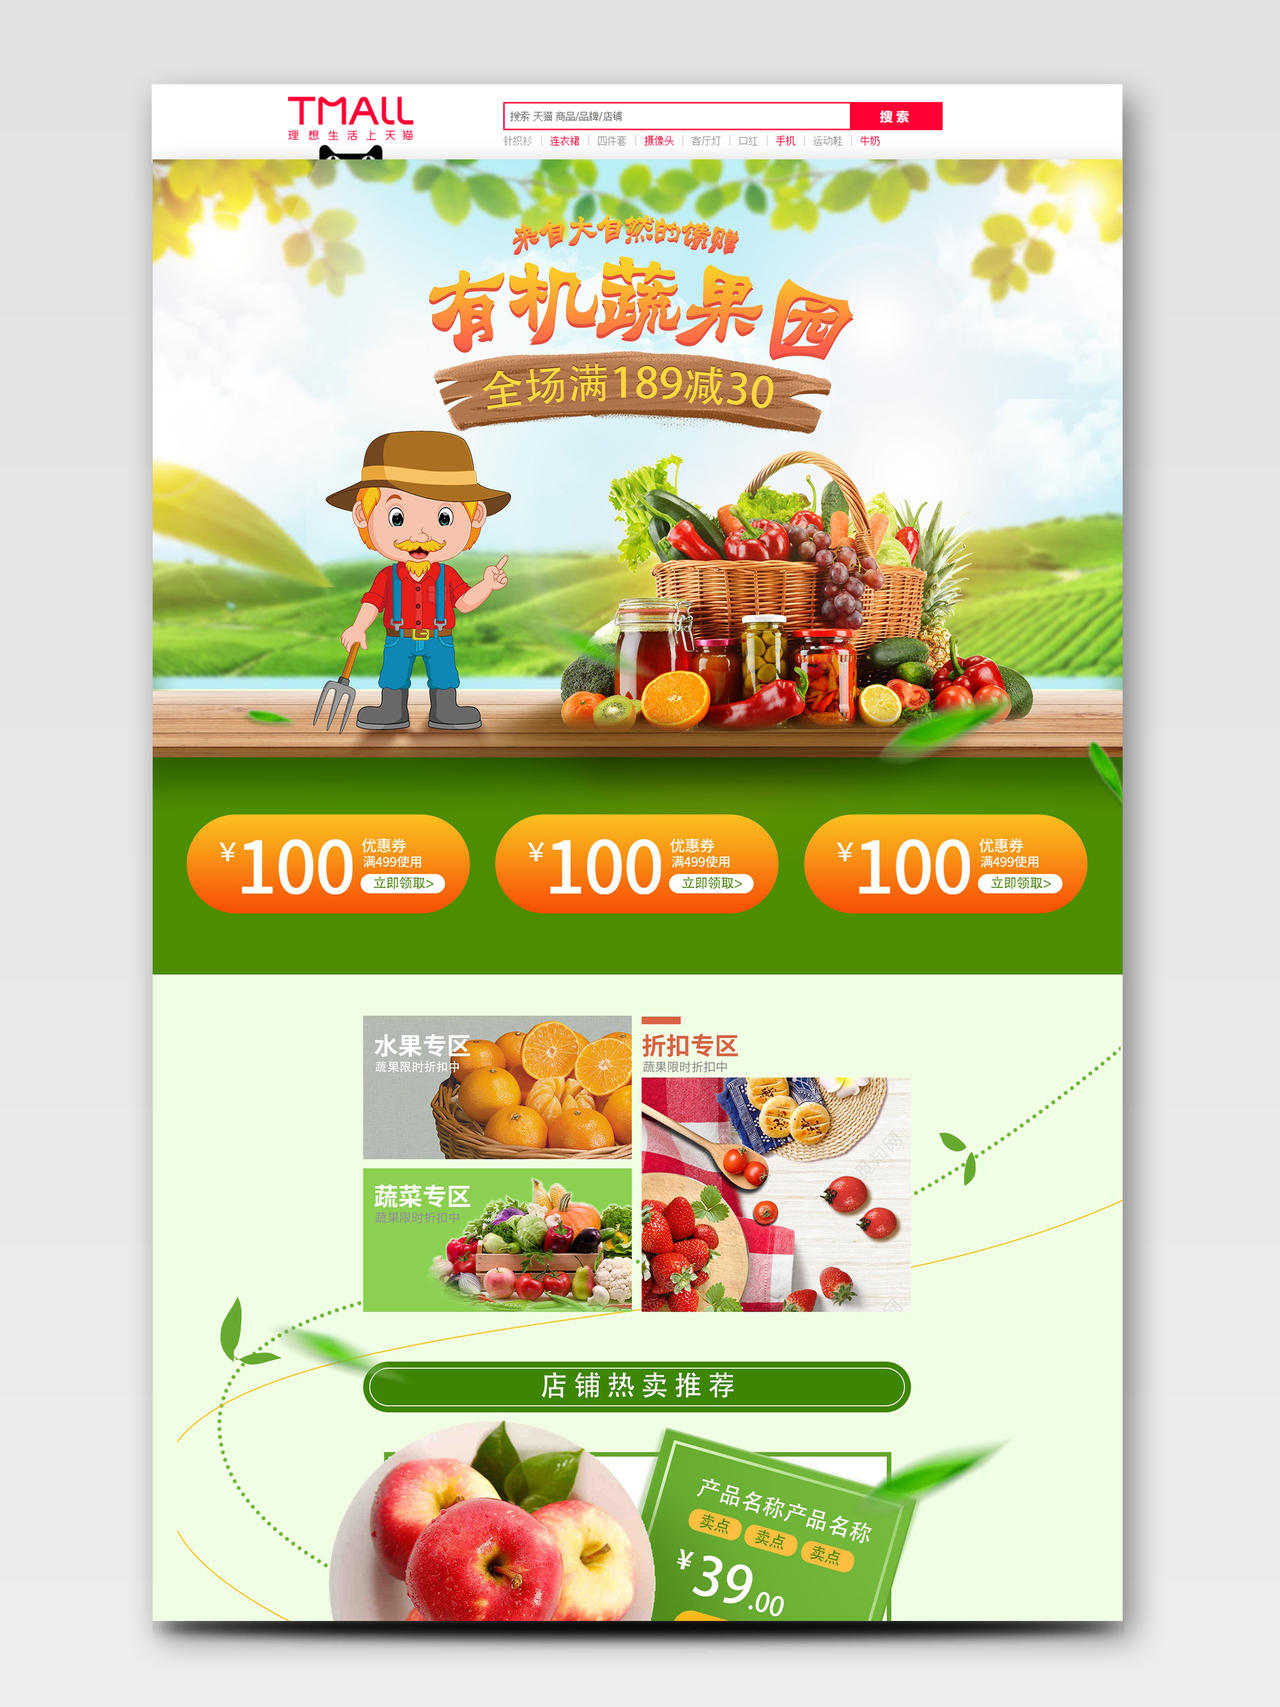 绿色植物小清新有机蔬果园生鲜水果淘宝天猫电商促销首页